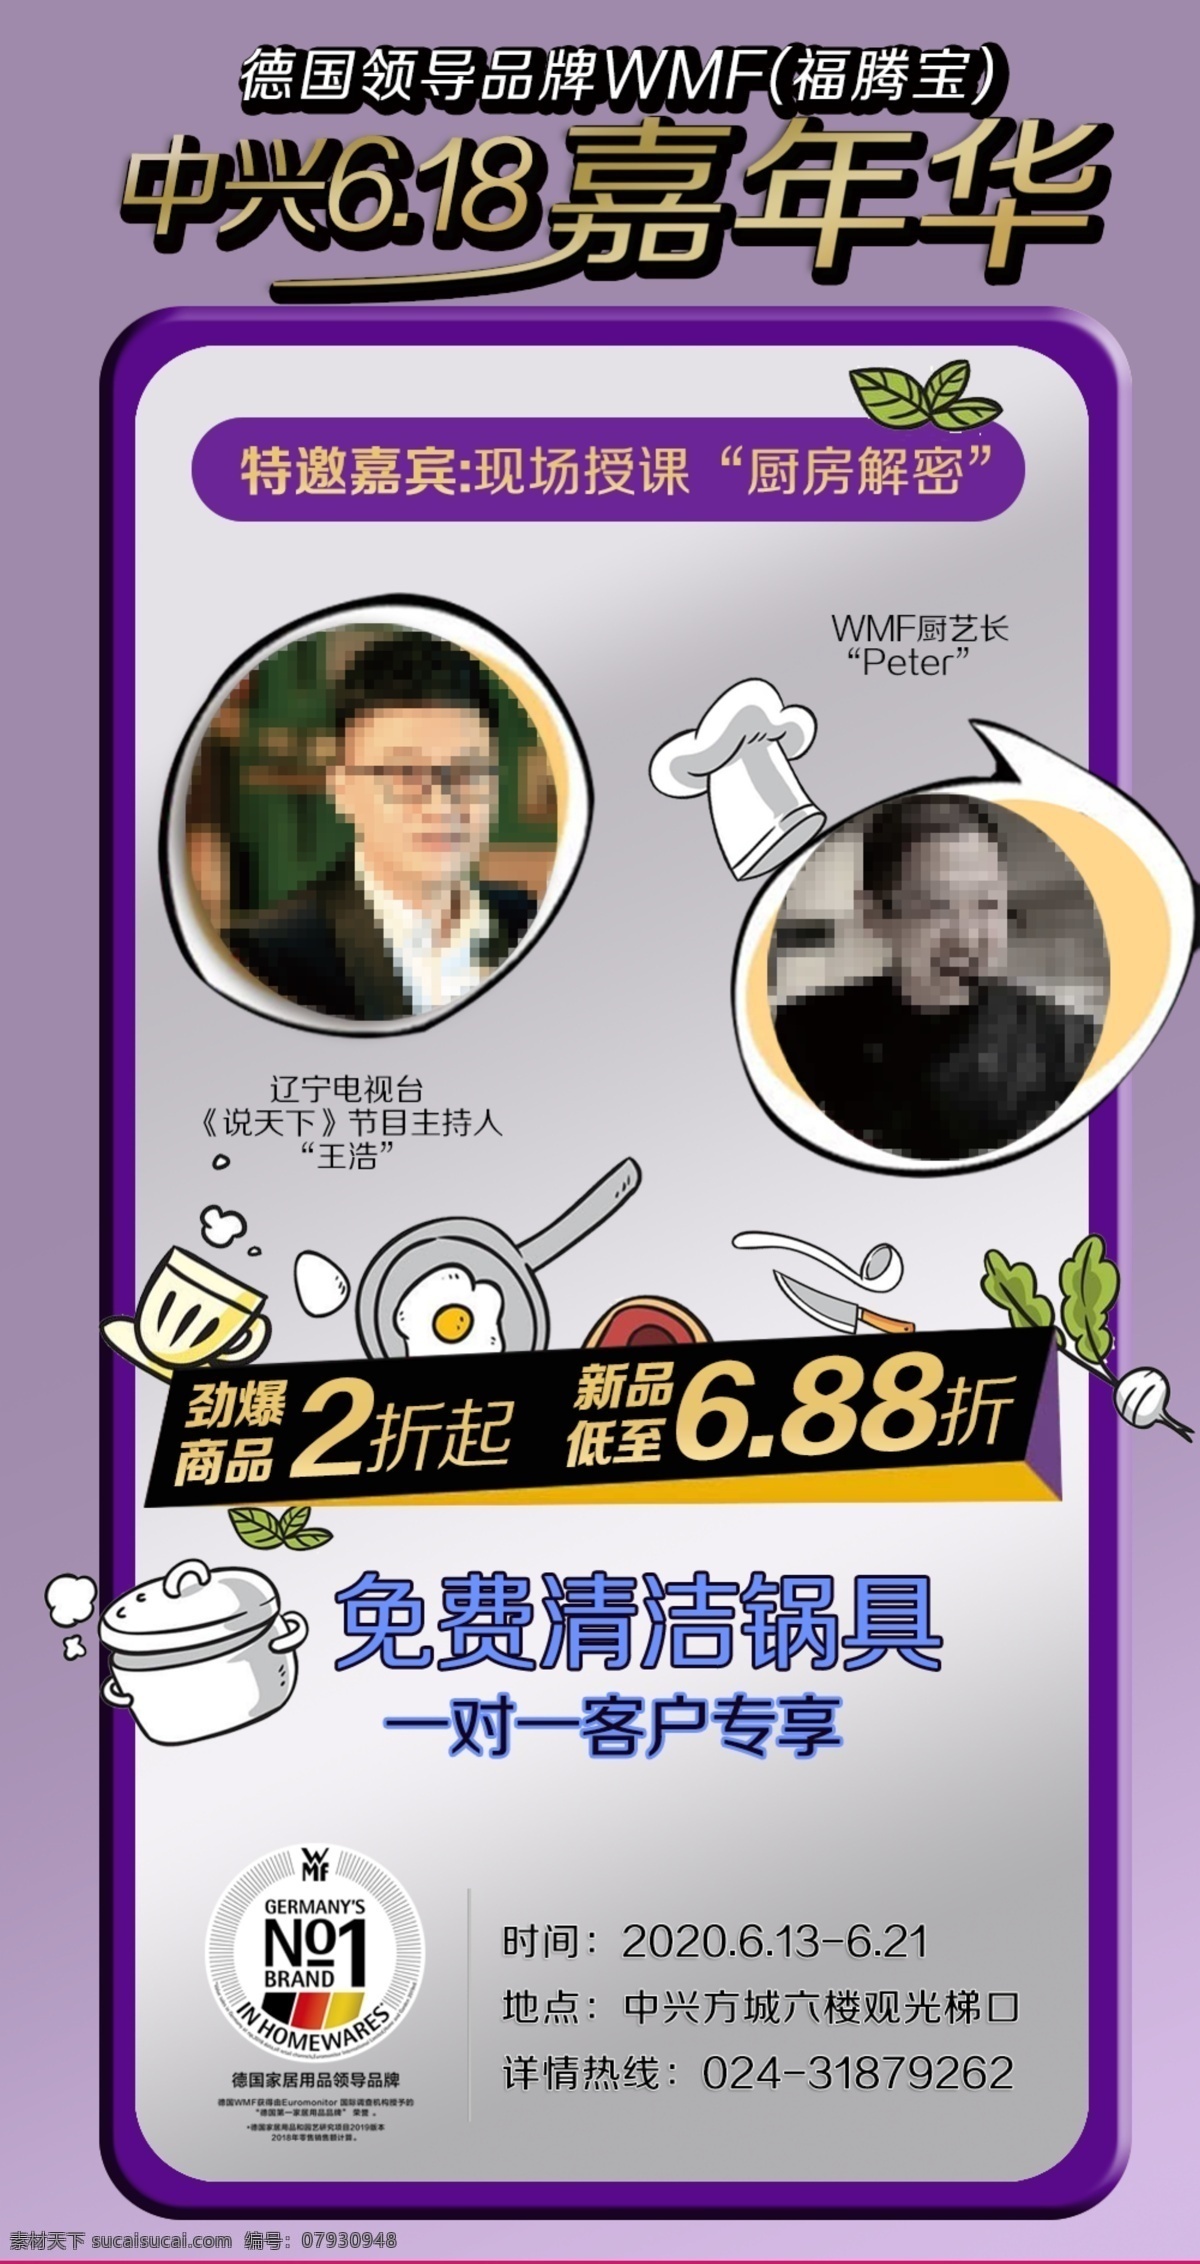 嘉年华 手机推广 画面 紫色 推广活动 手机画面 厨艺活动 折扣海报